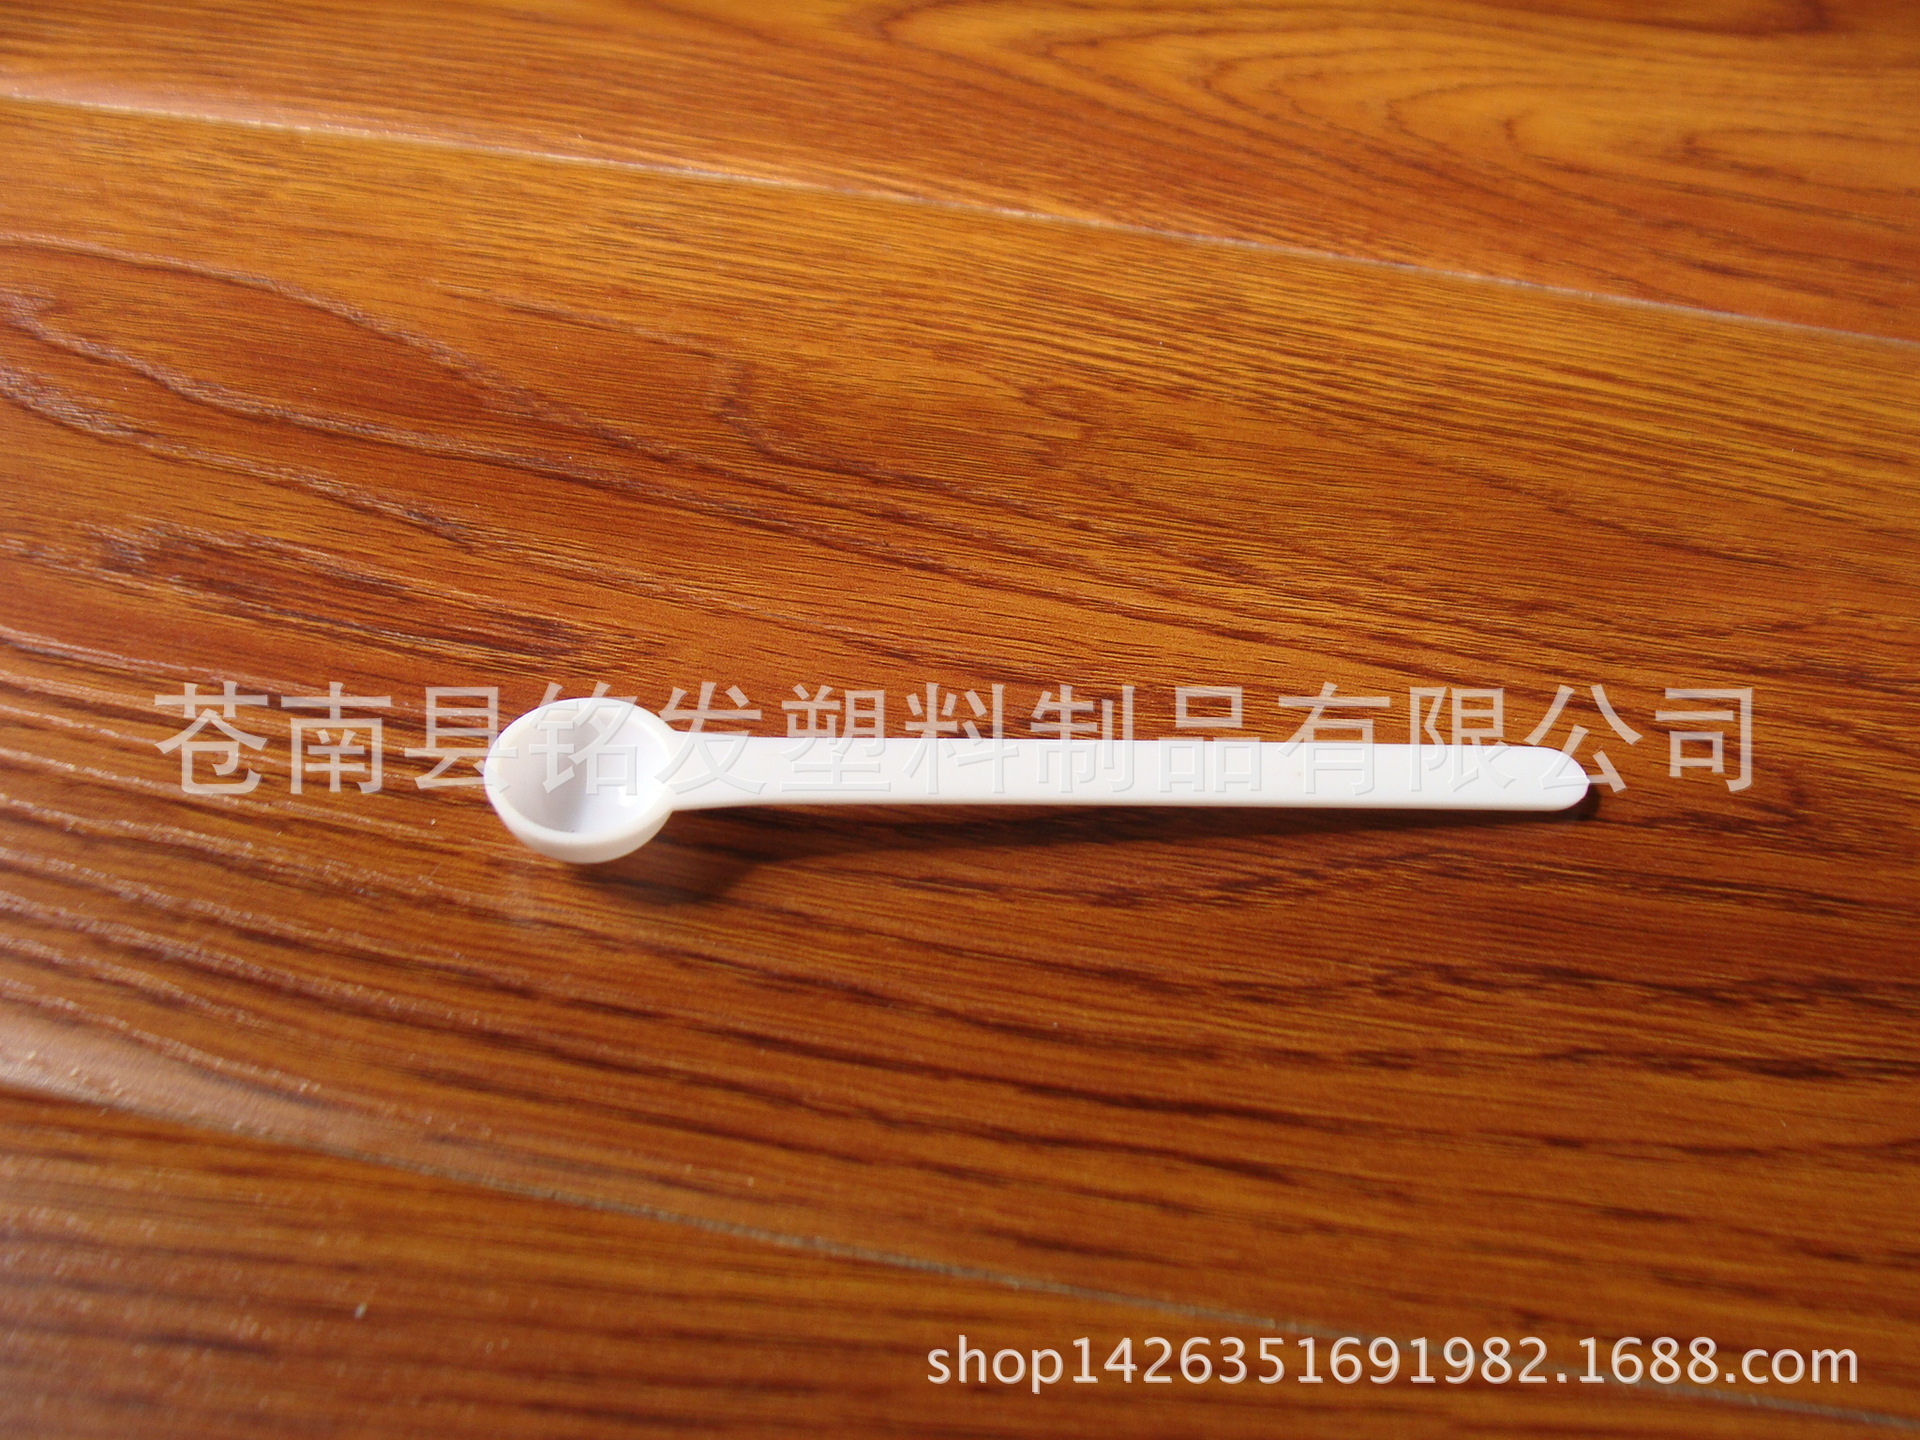 厂家一次性塑料勺子长柄勺一克勺计量勺定量勺粉勺PS勺子亚克力勺